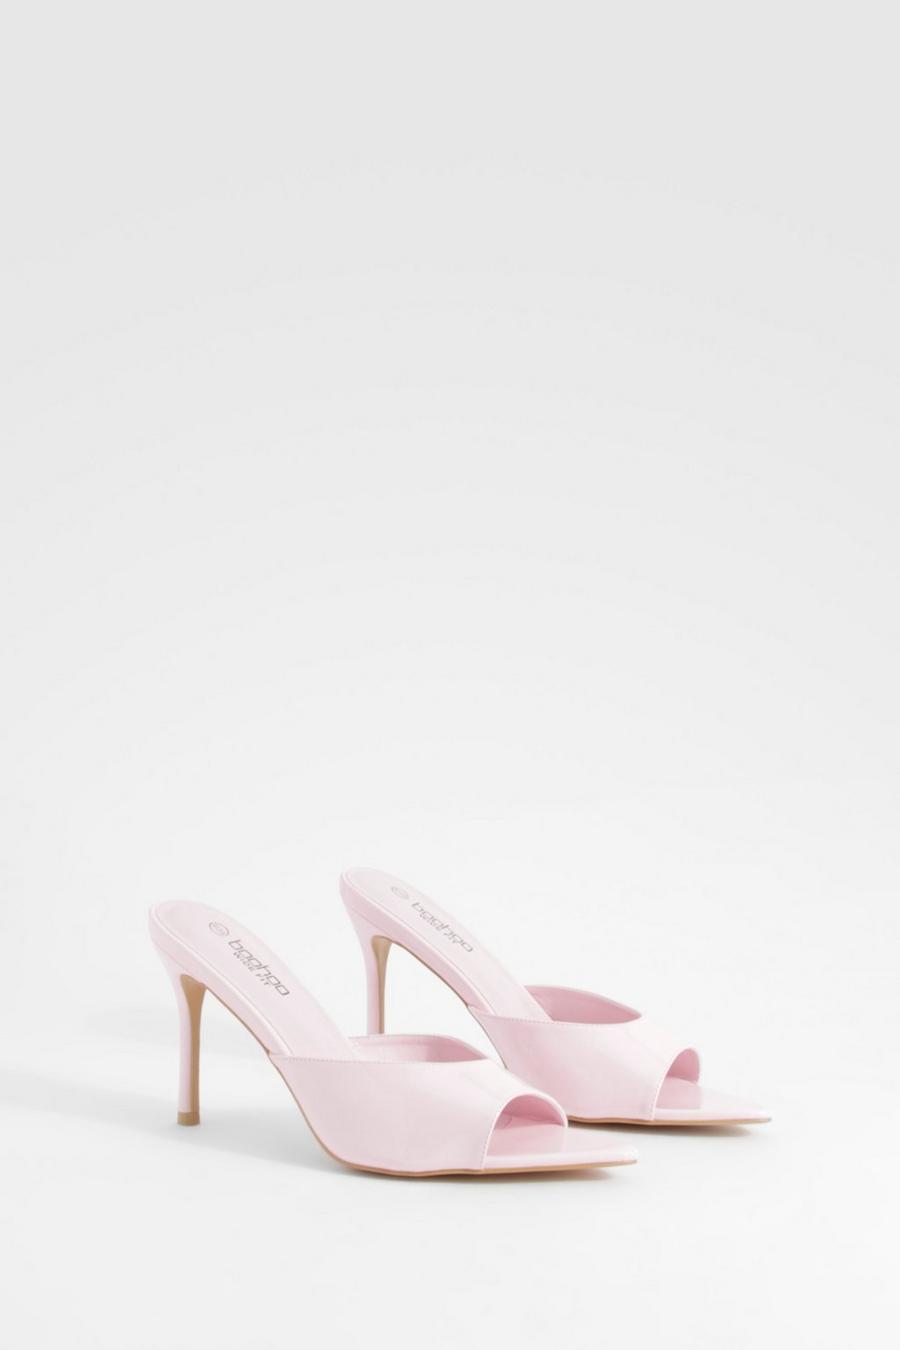 Sandali Mules a calzata ampia a punta in vernice con tacco, Pink